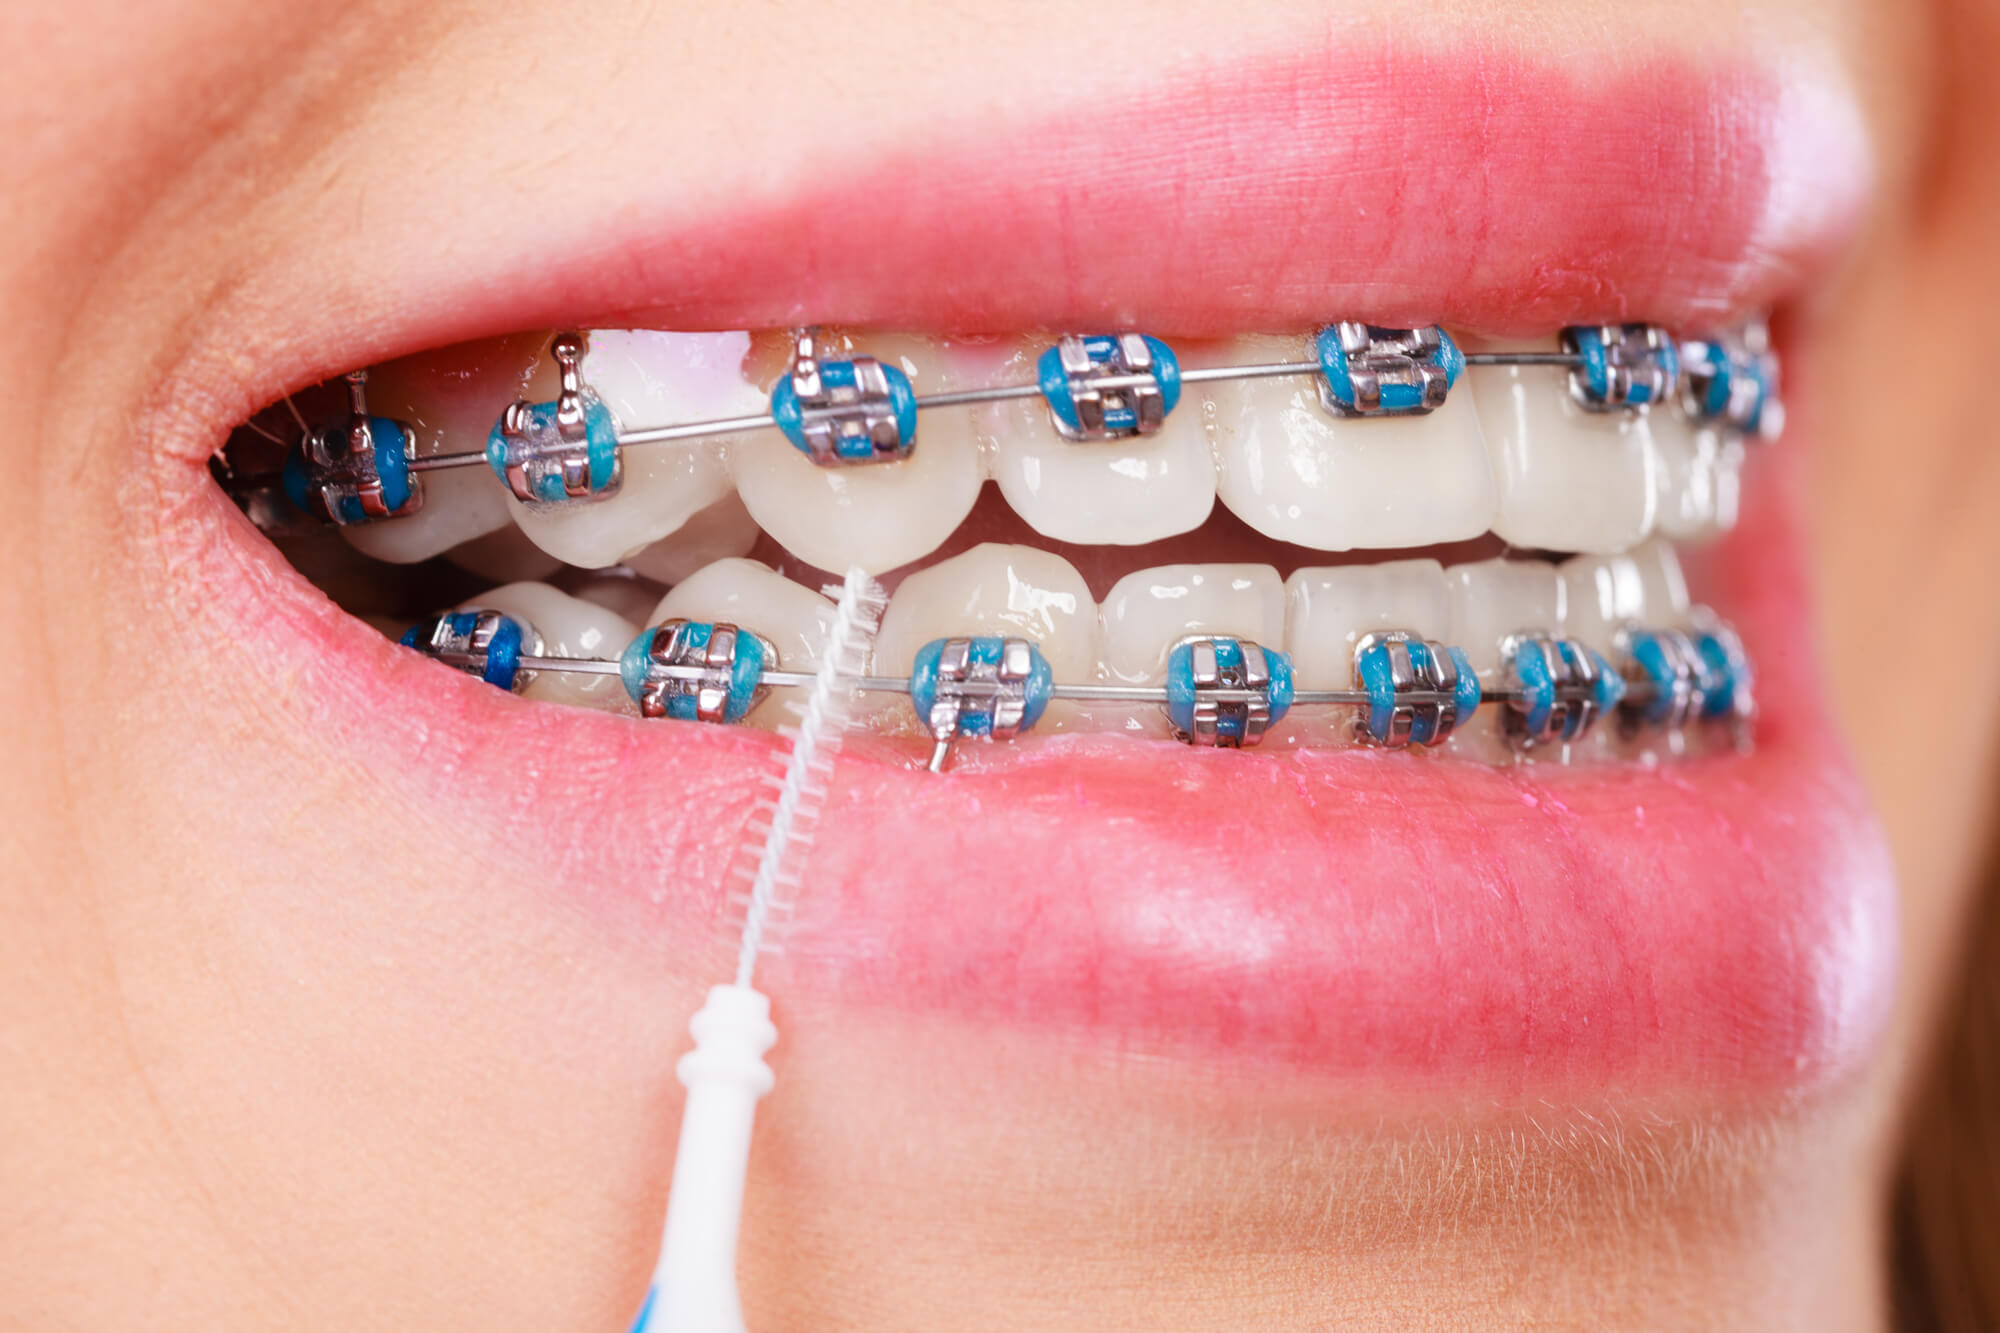 https://doutorsantoandre.com.br/odontologia/wp-content/uploads/2019/01/aparelho-ortodontico.jpg